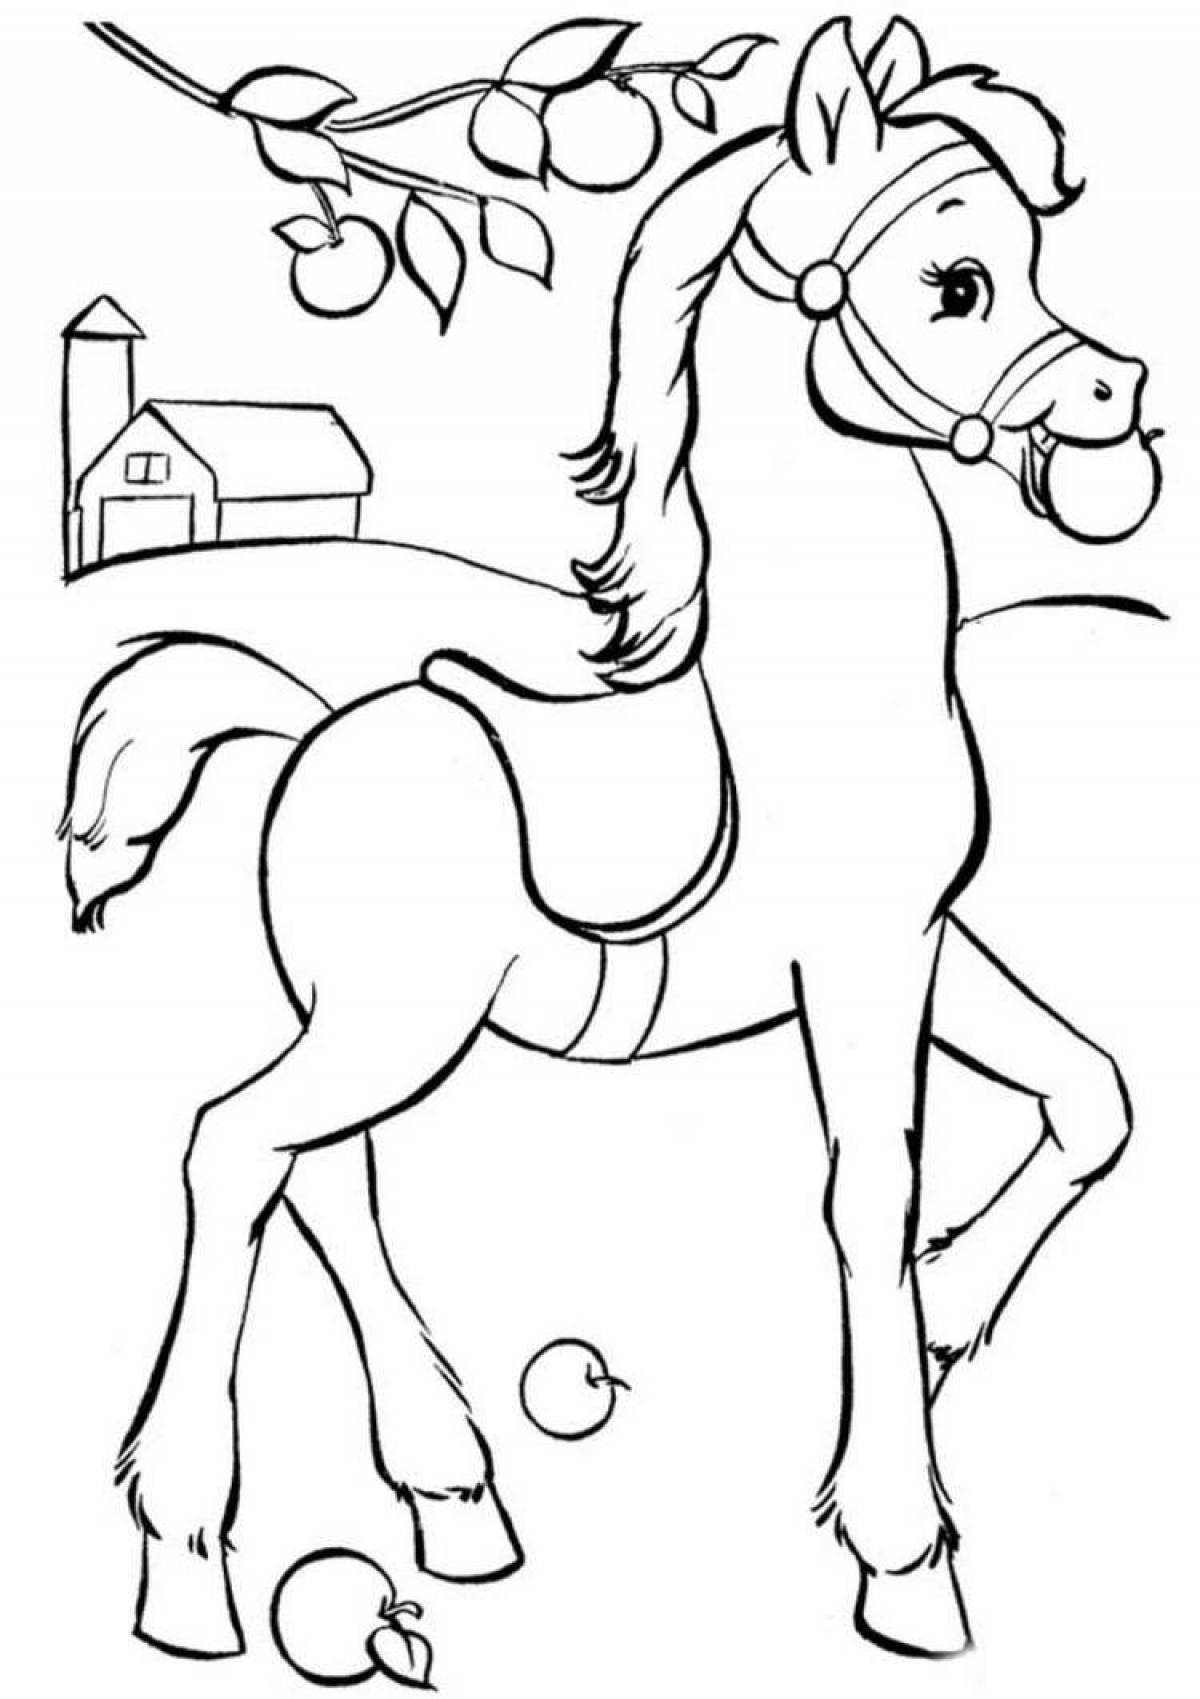 Раскрасить лошадку. Раскраска. Лошадка. Лошадка раскраска для детей. Раскраска конь. Раскраски лошадки для девочек.